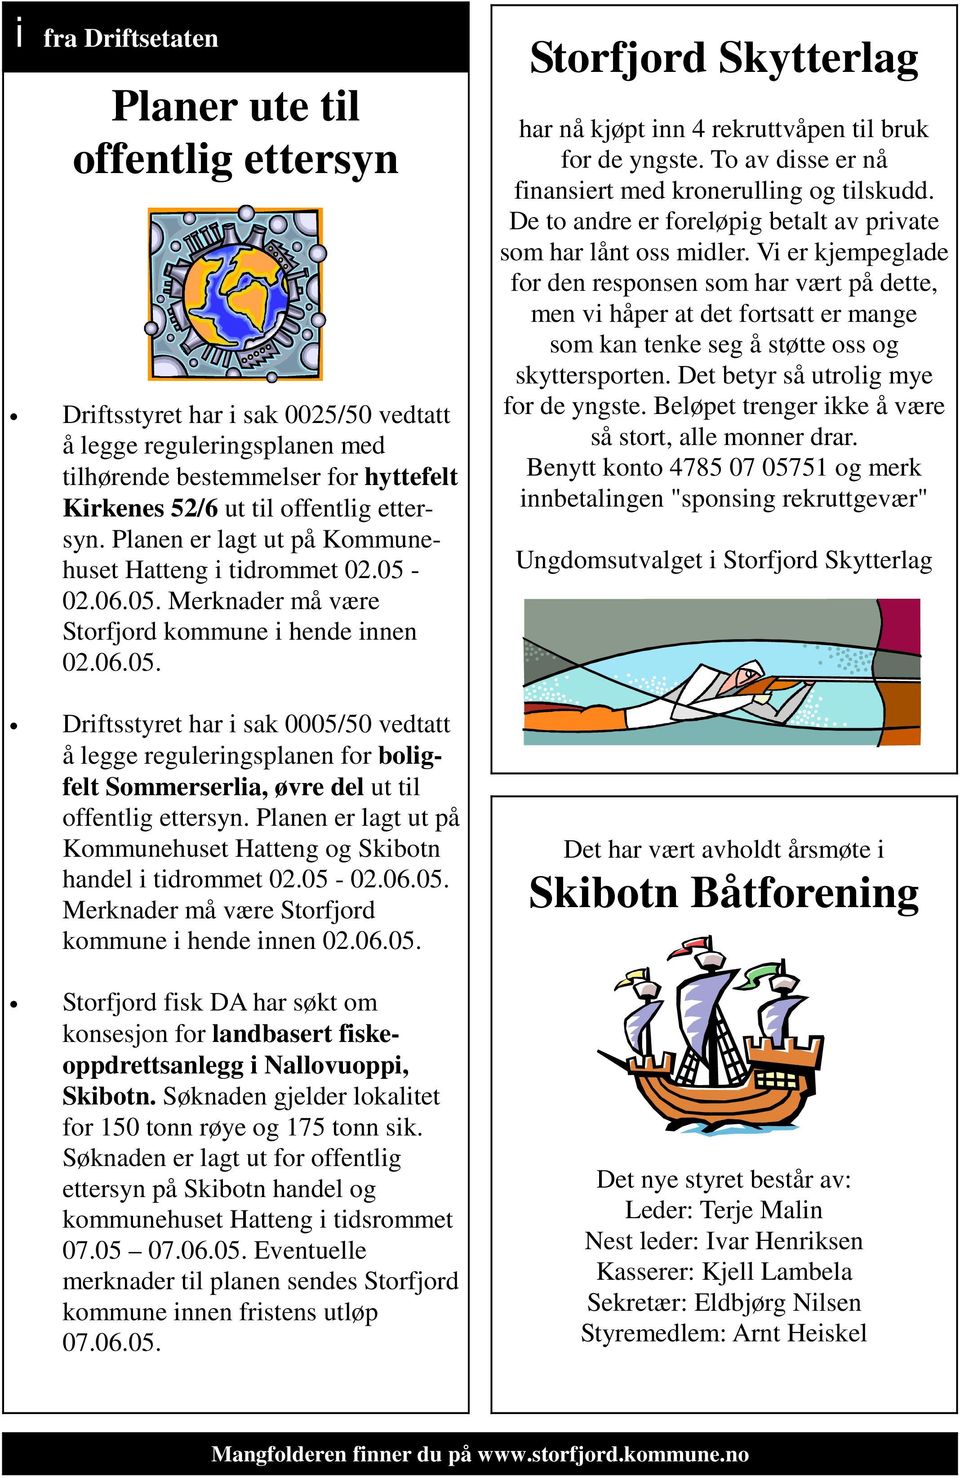 Planen er lagt ut på Kommunehuset Hatteng og Skibotn handel i tidrommet 02.05-02.06.05. Merknader må være Storfjord kommune i hende innen 02.06.05. Storfjord fisk DA har søkt om konsesjon for landbasert fiskeoppdrettsanlegg i Nallovuoppi, Skibotn.